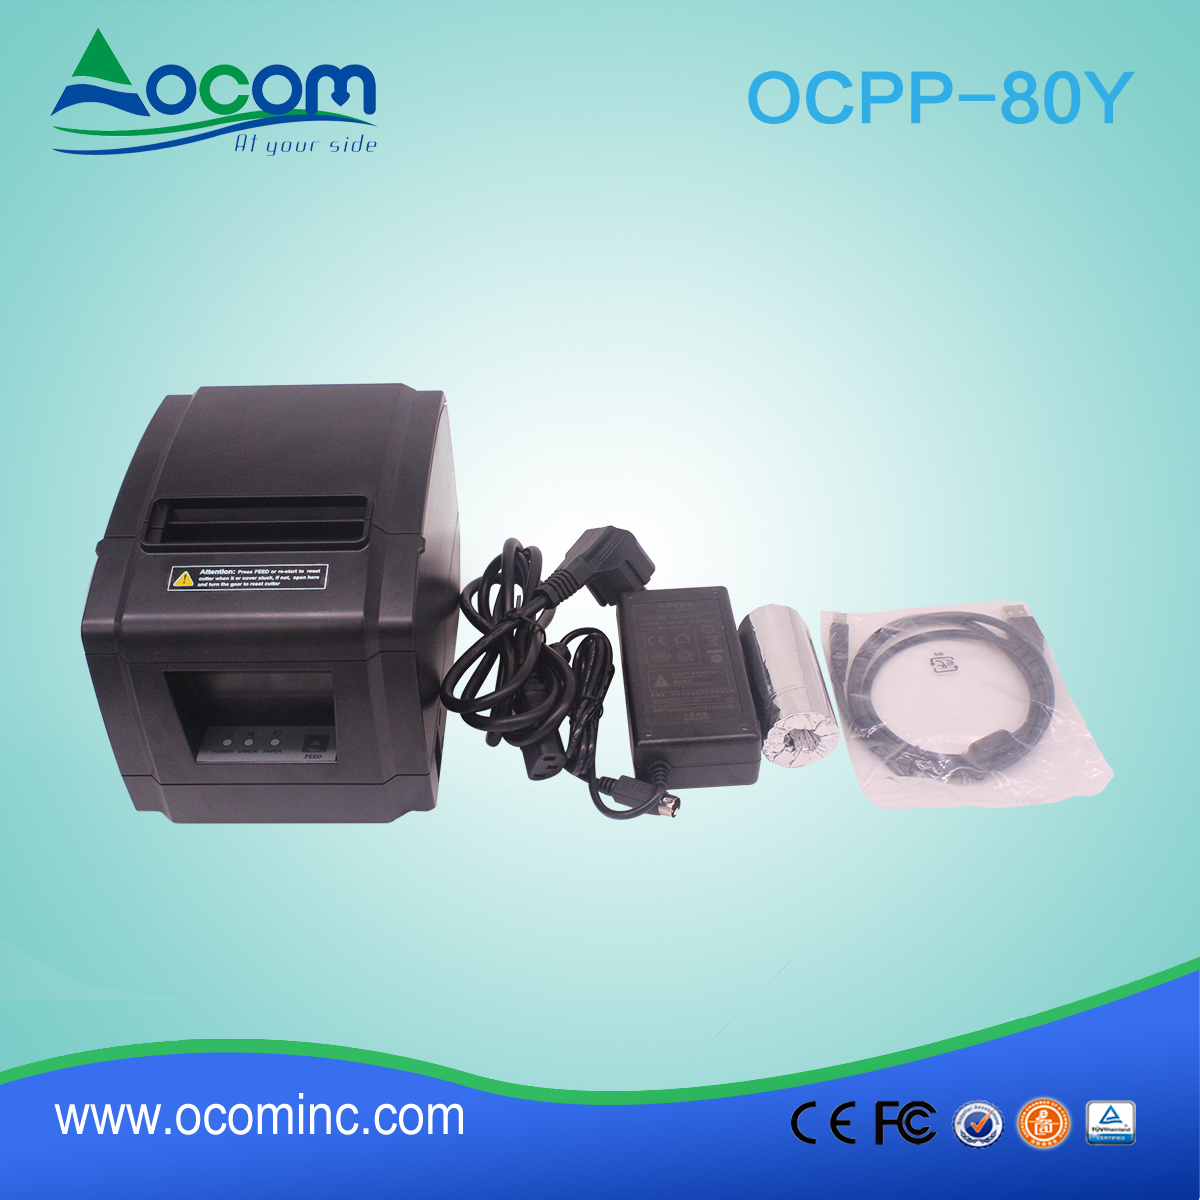 OCPP-80Y-China hizo baja pérdida de impresora térmica de 80 mm